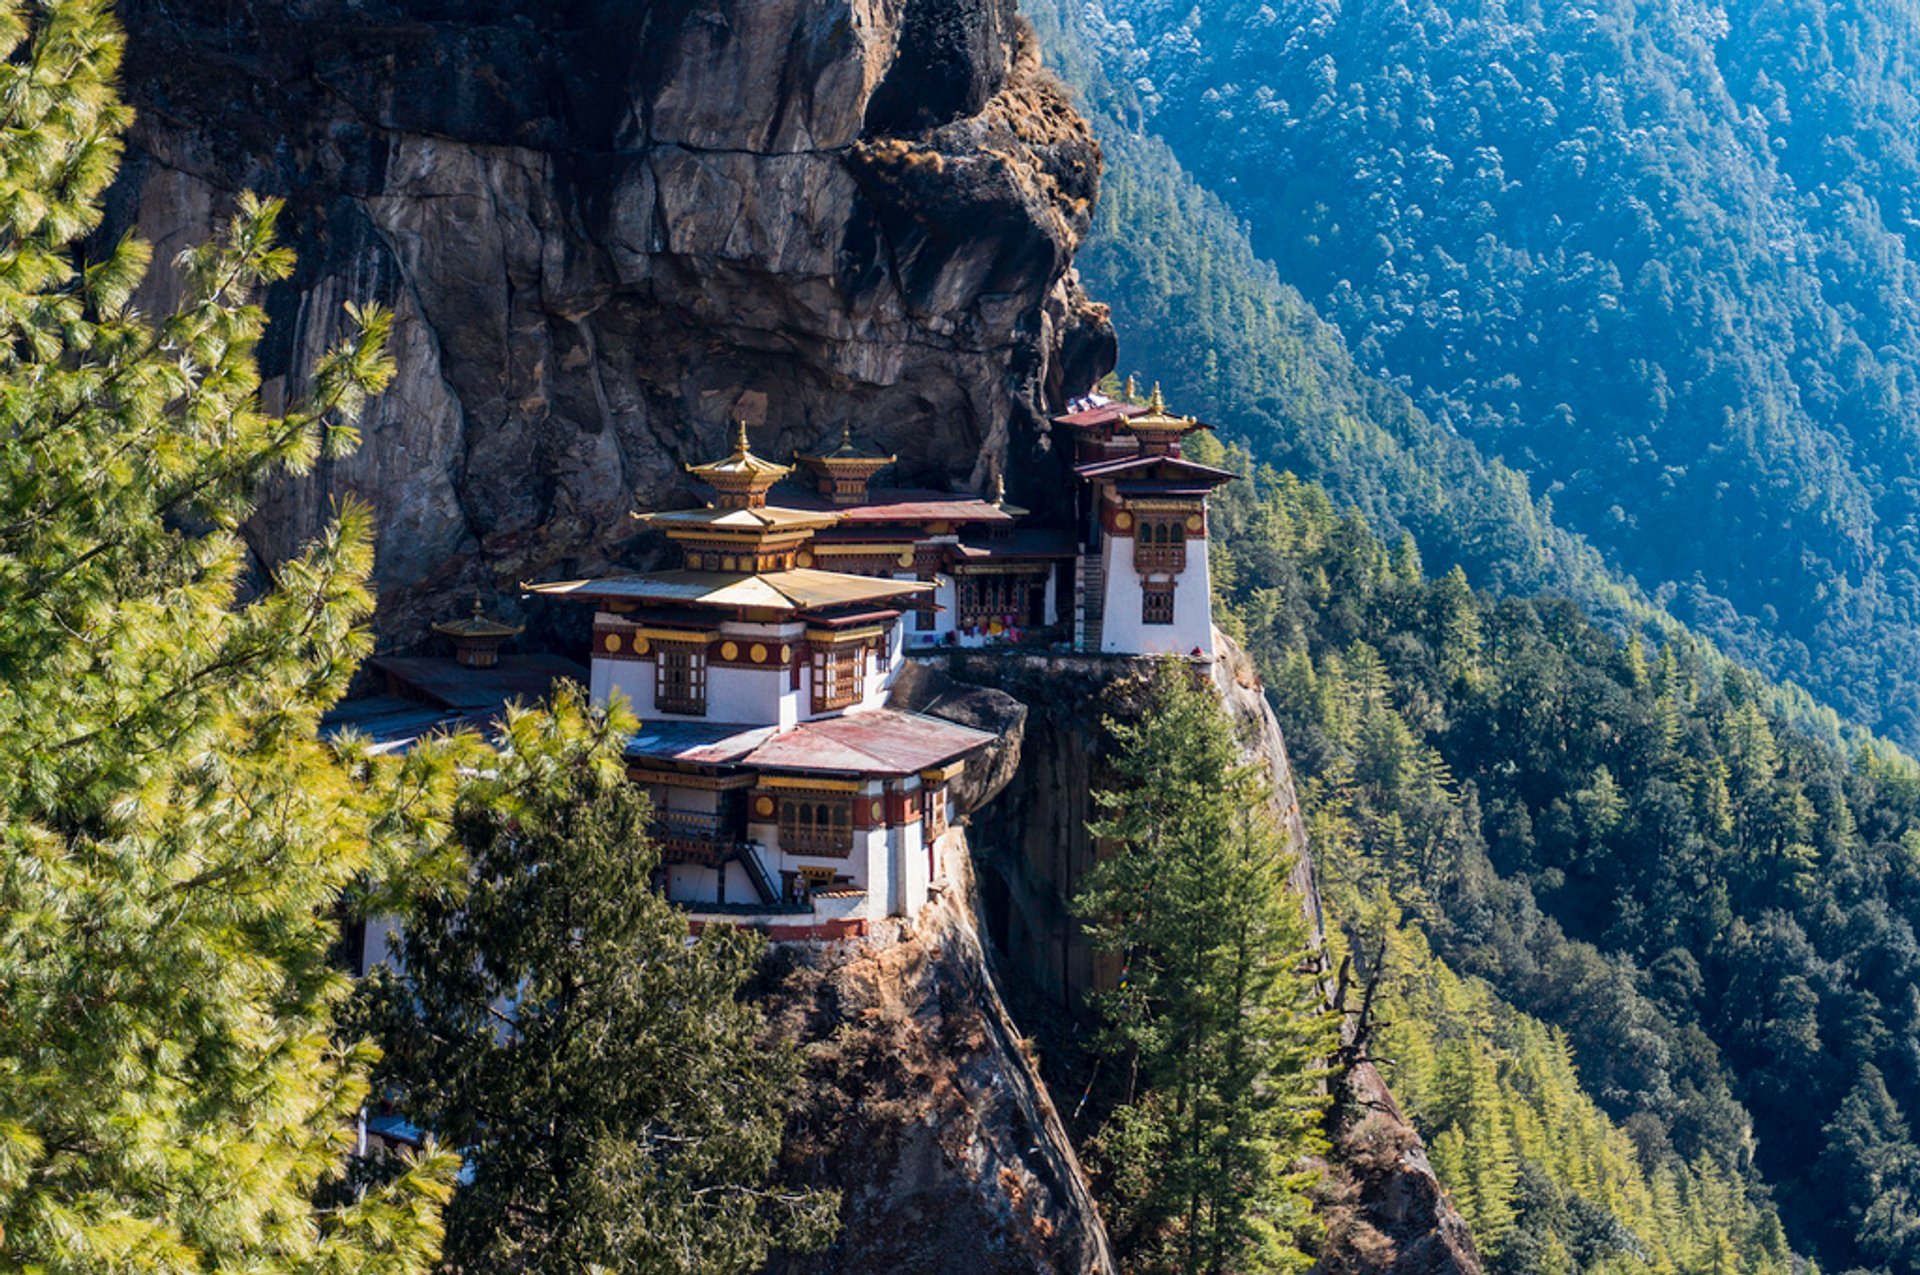 Tu viện Taktsang: Tu viện mang tính biểu tượng, điểm đến ai cũng muốn ghé ở Bhutan  - Ảnh 3